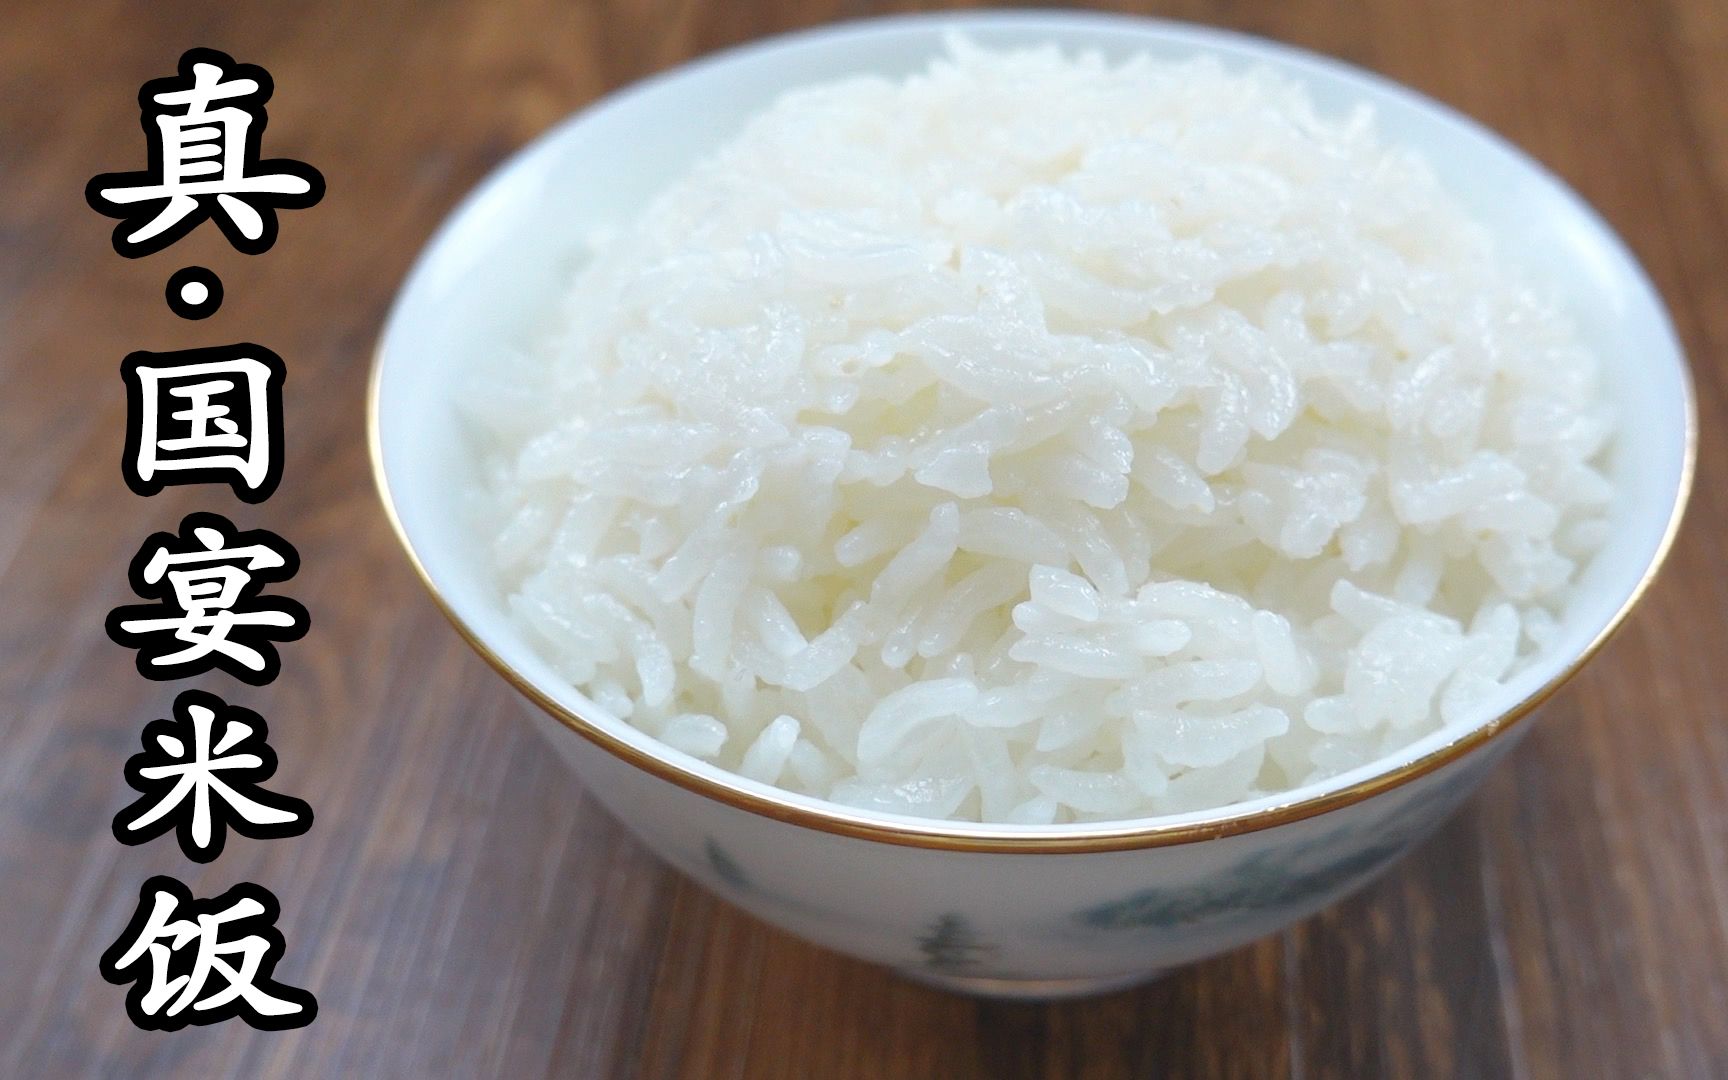 国宴上的米饭 光一个碗就要将近1000元